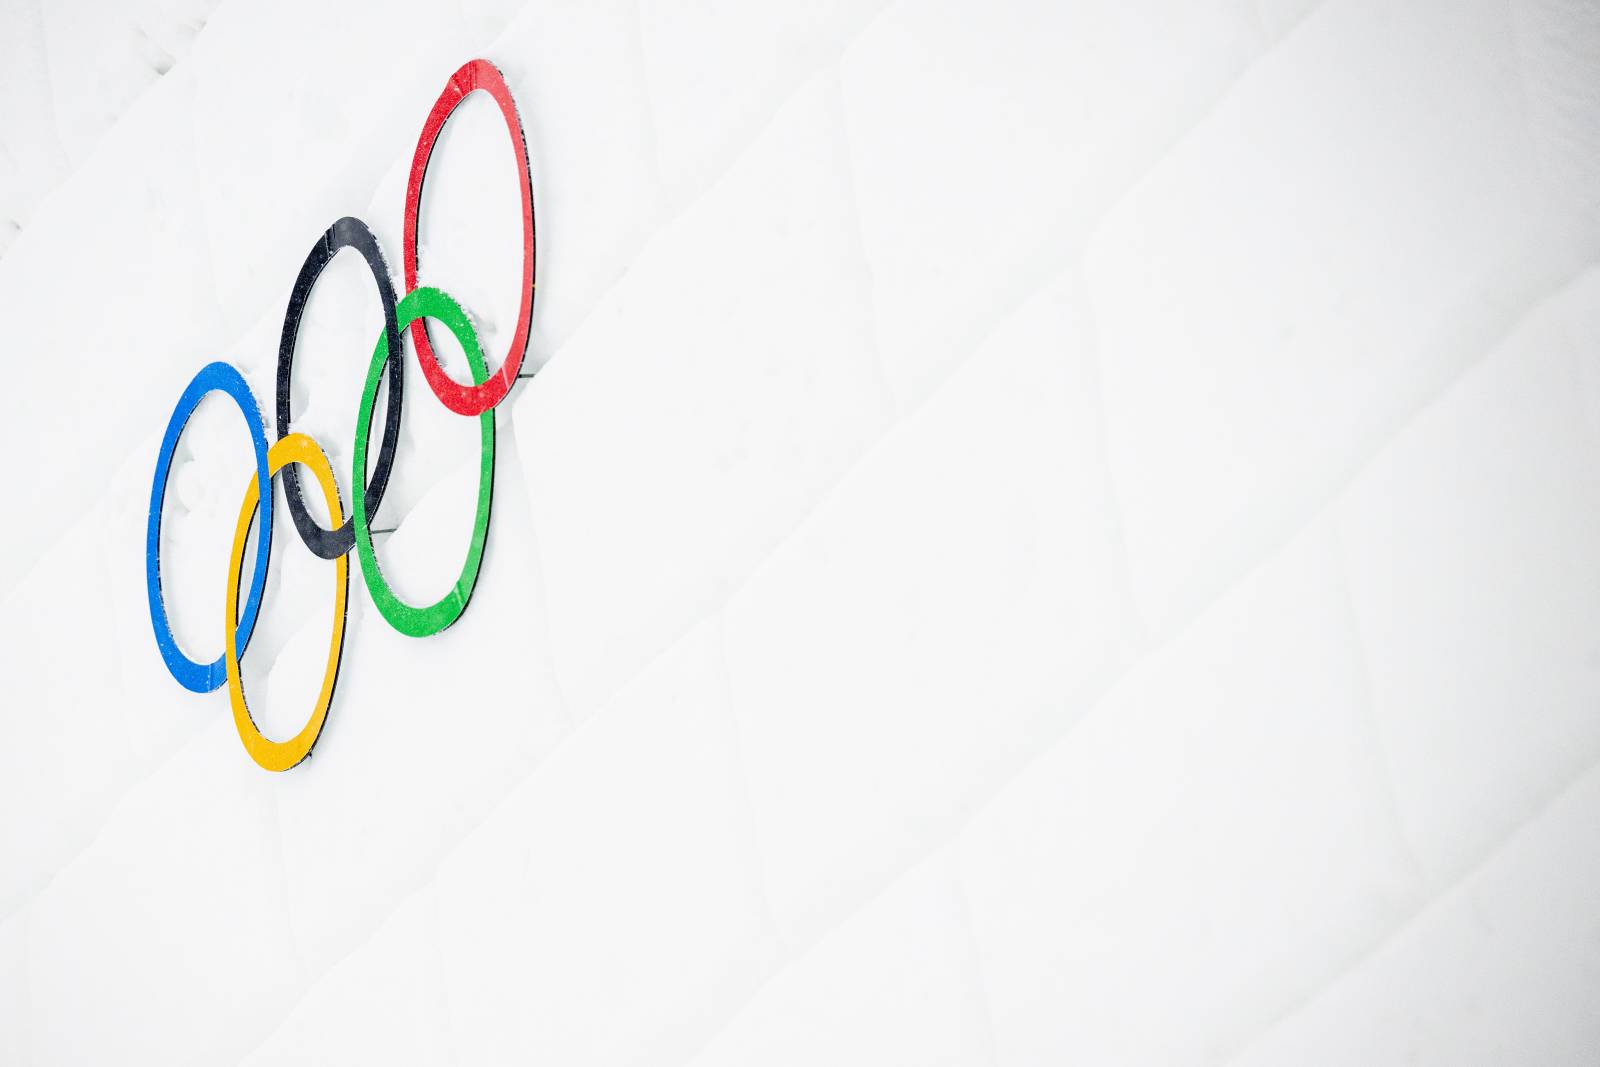 Министр спорта Матицын объявил, что в ближайшее время будут поданы иски по защите прав российских спортсменов